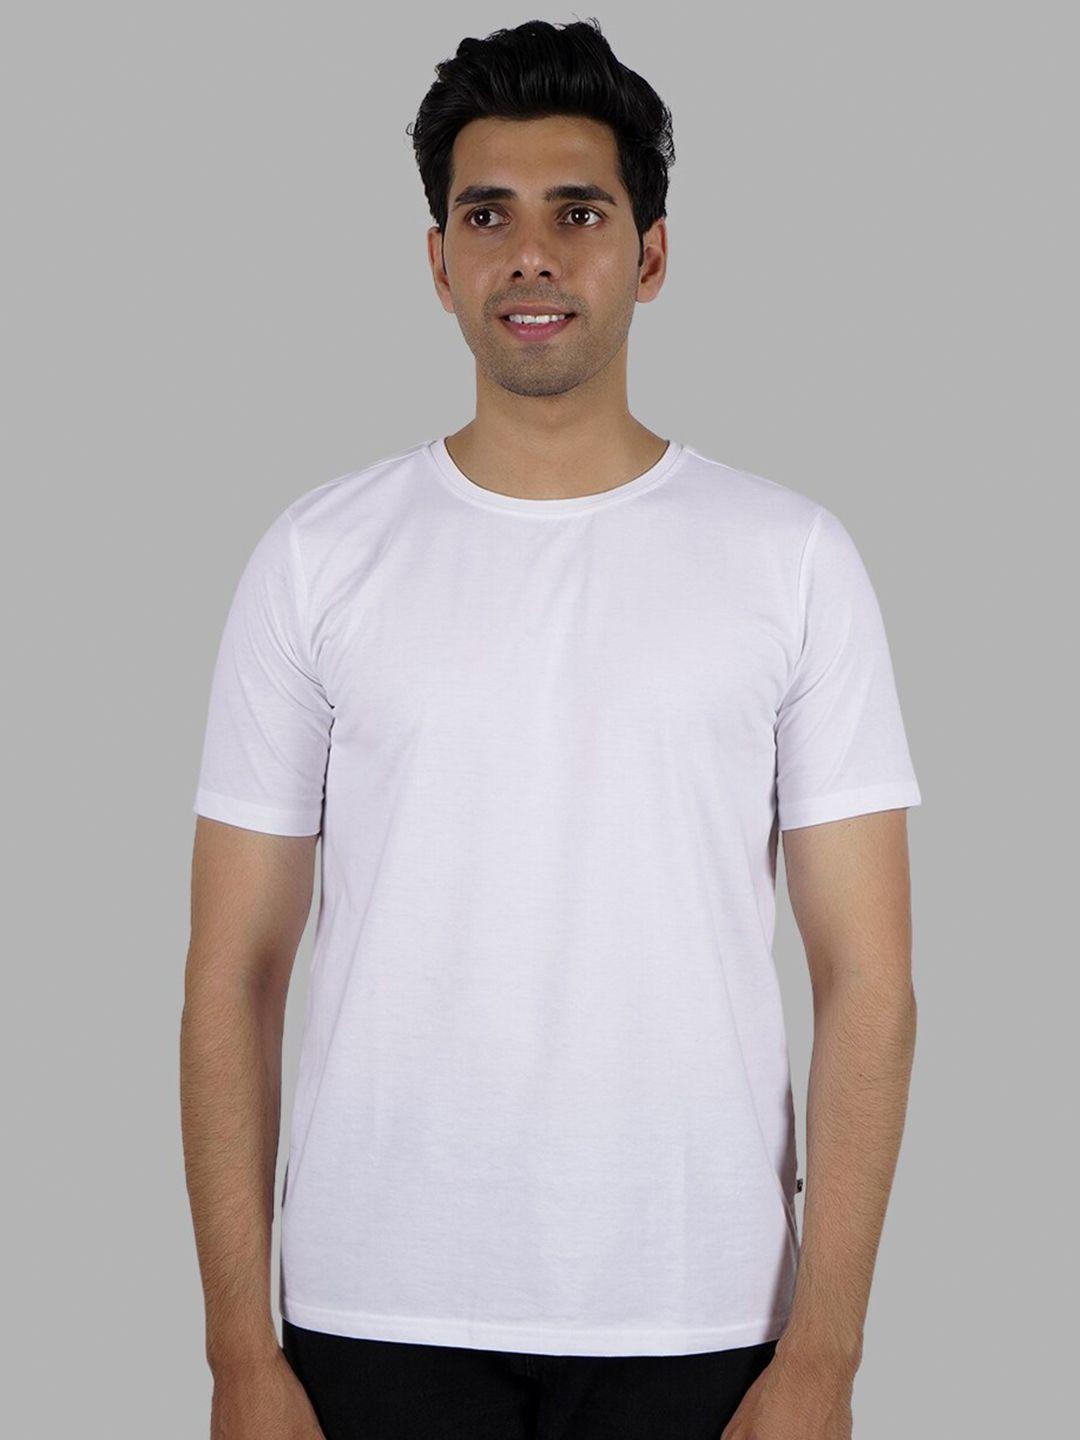 elibolz round neck short sleeves t-shirt